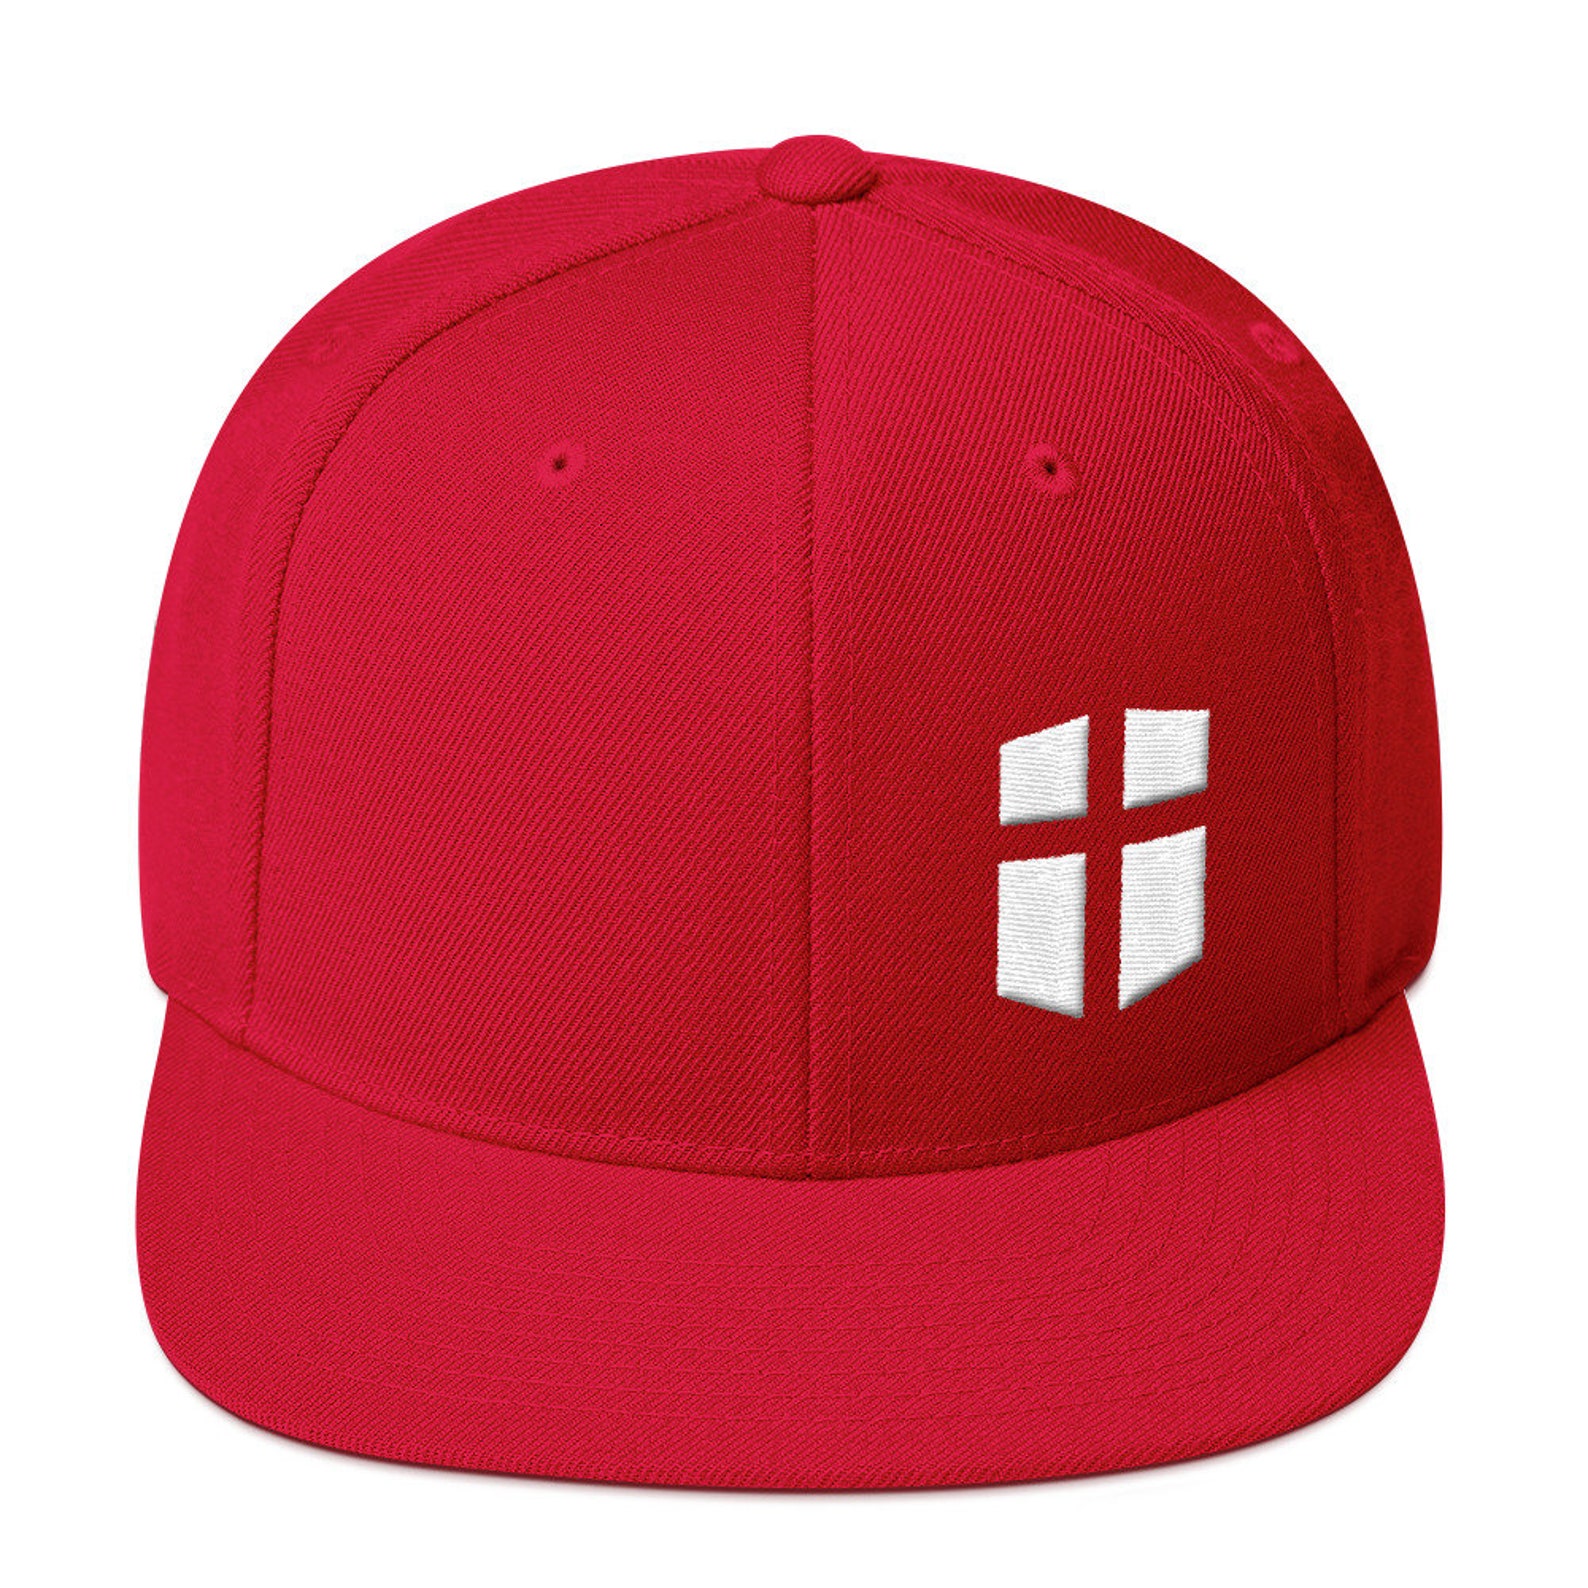 Christian Cross Shield Logo Wool Blend Snapback Hatd - Etsy